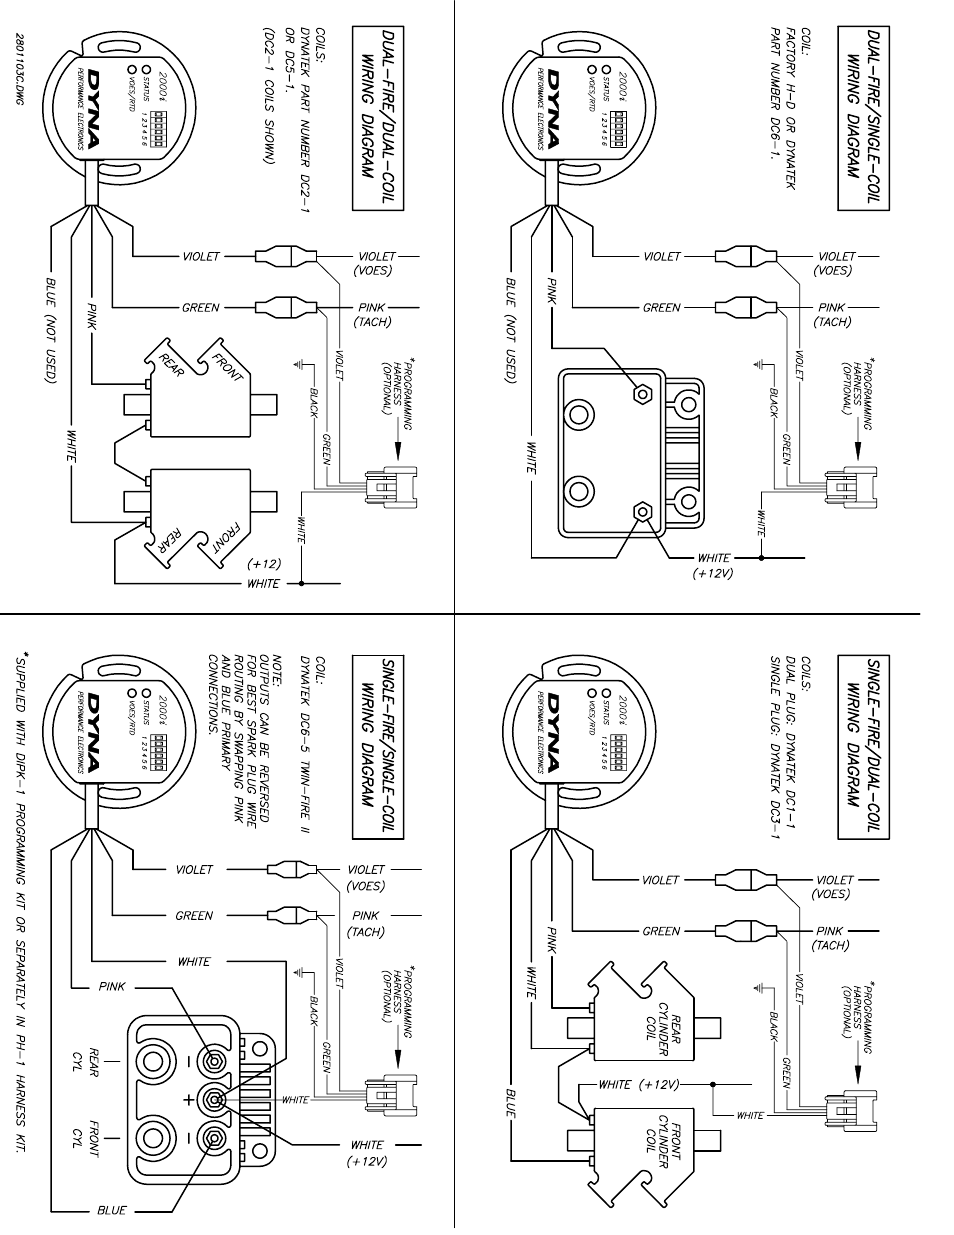 Dyna 2000 Ignition Wiring Diagram Suzuki Greenus